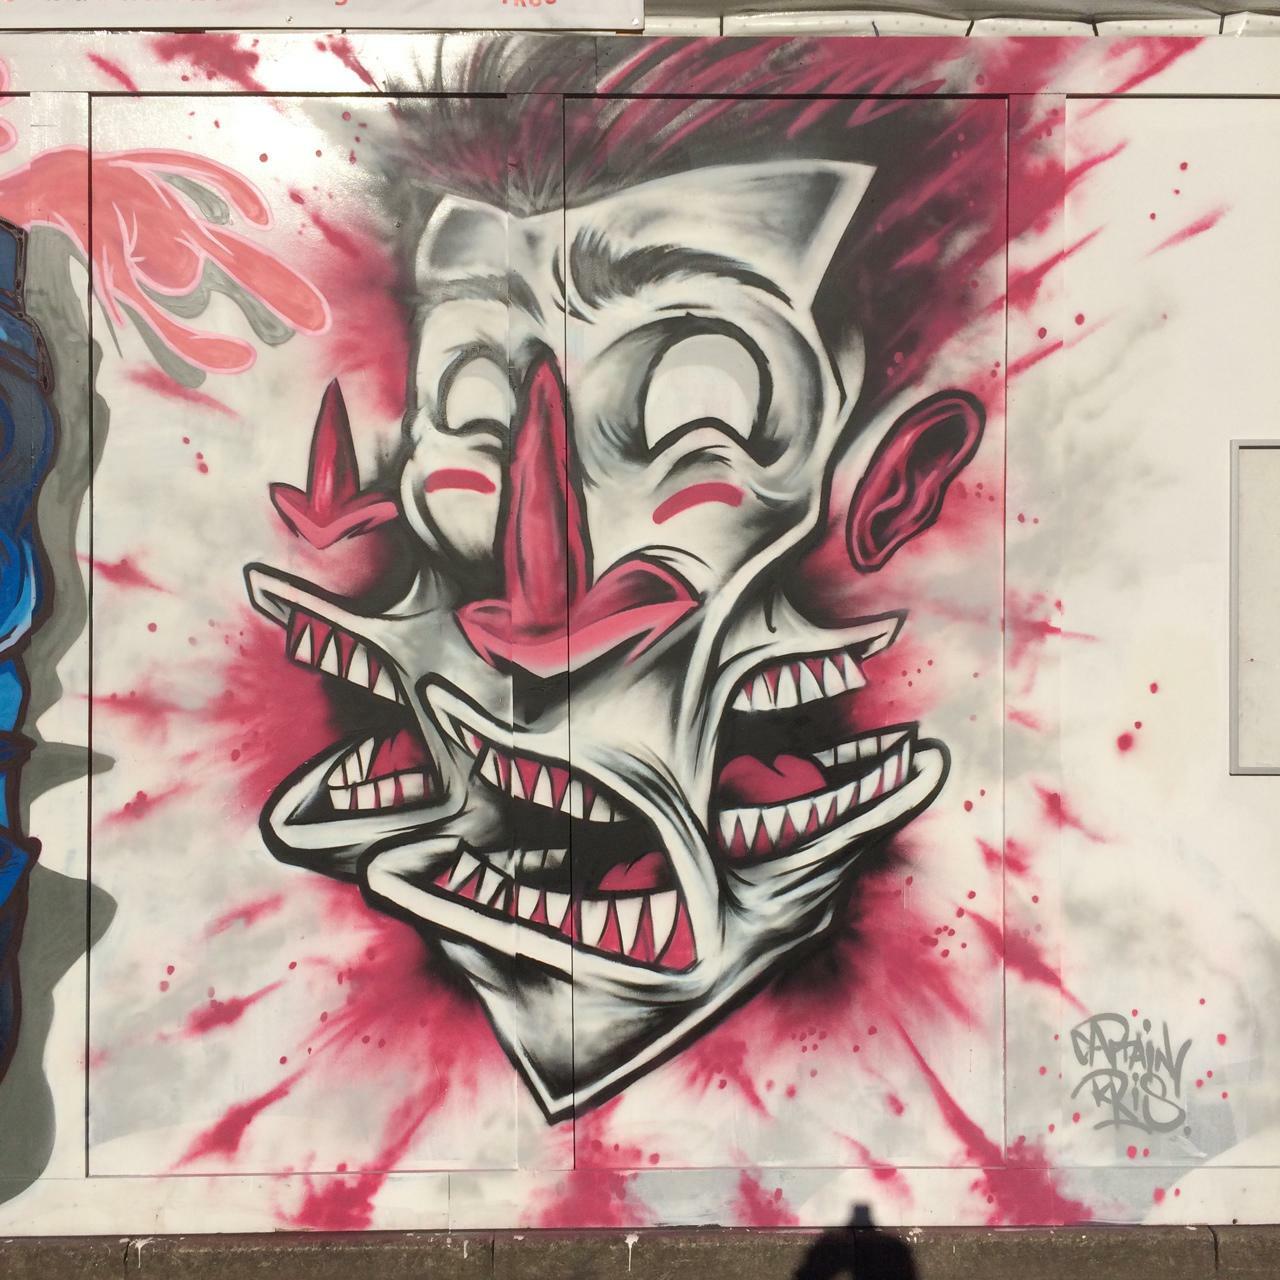 GSA |  piece by captainkris
http://blog.globalstreetart.com/post/130276654126/the-bigger-picture-projected-art-and-bboy-battles
#graffiti #art #streetart #urbanart #clownart https://t.co/PChCkdW7GG